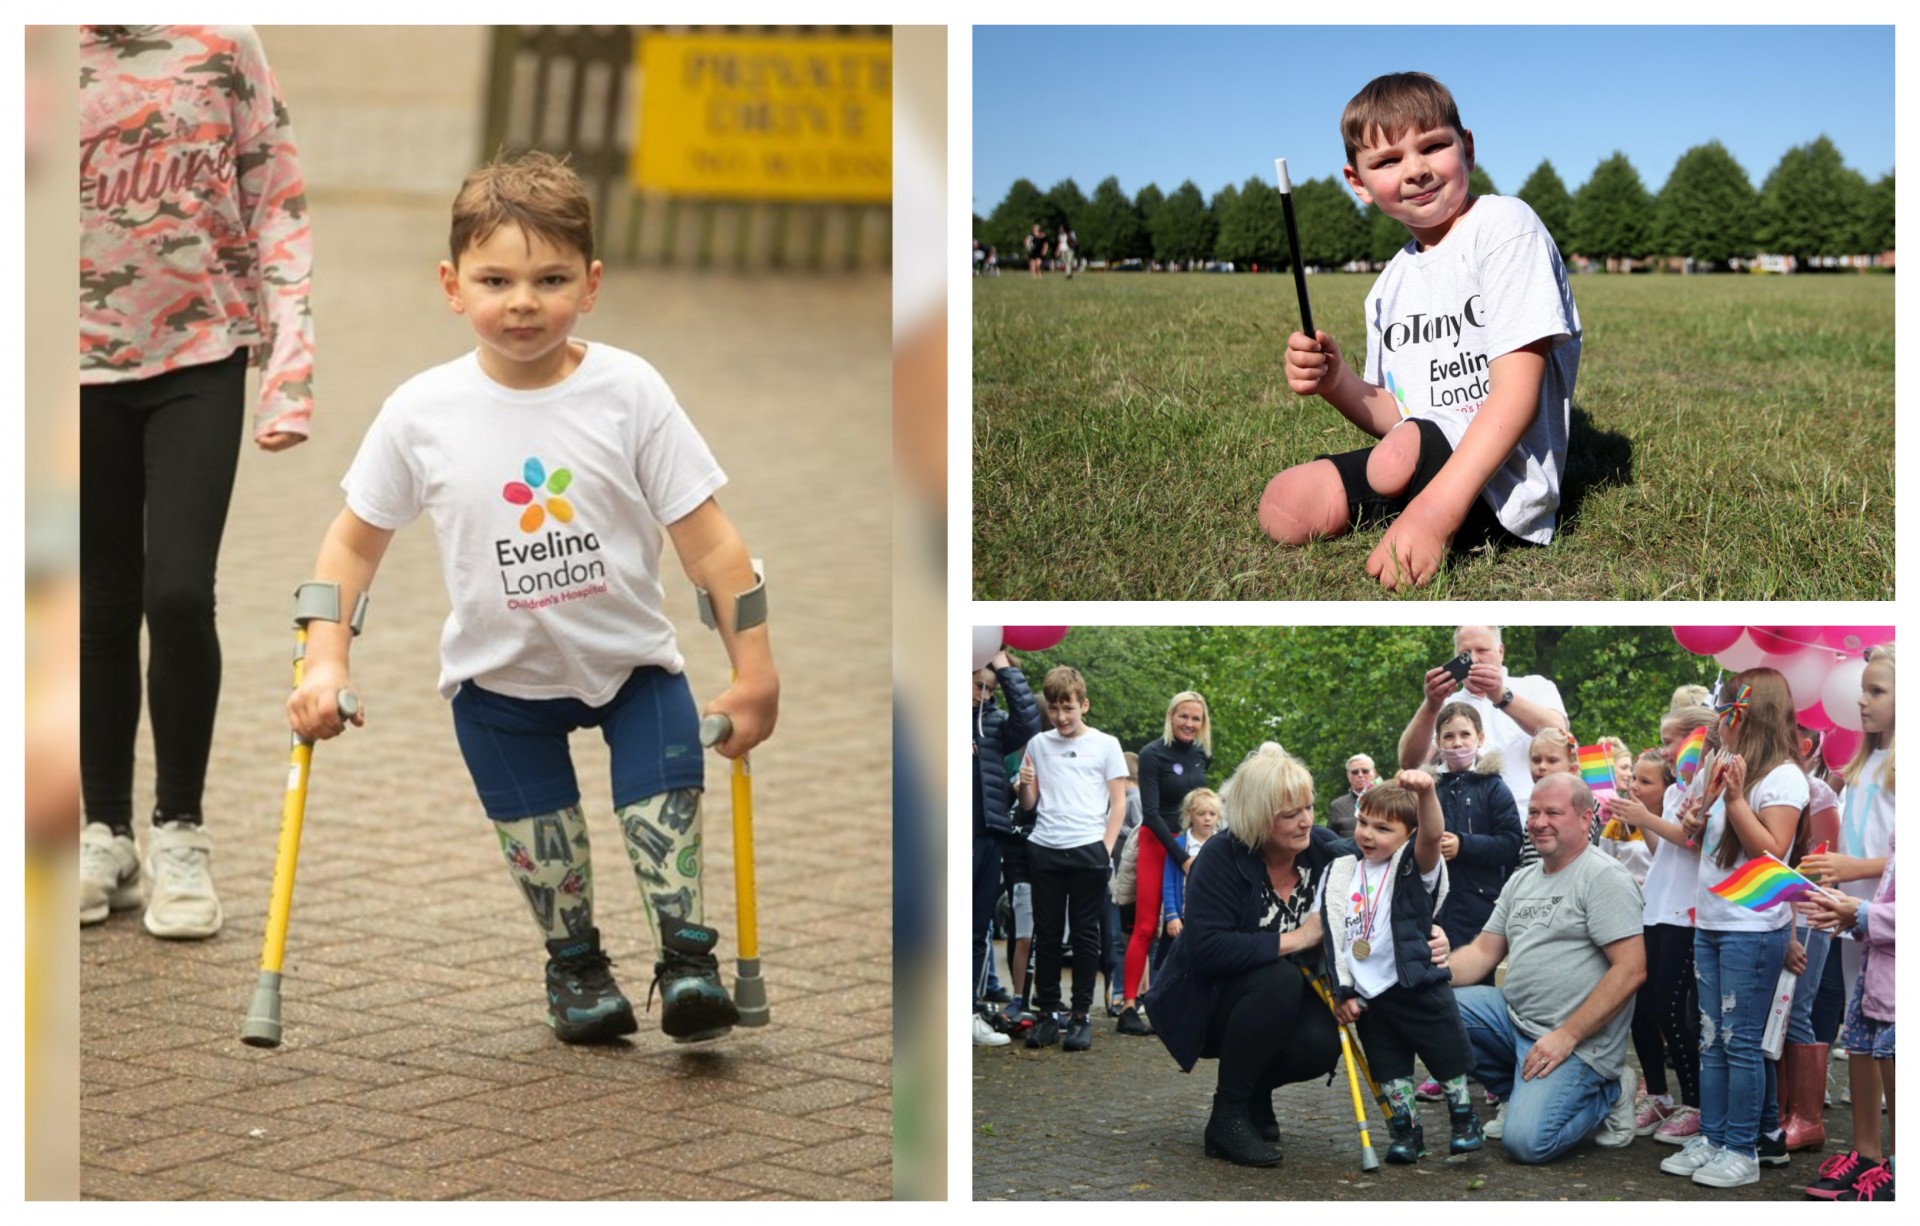 Не го спречија ниту ортопедските помагала: 5 - годишниот Тони собра 1 милион фунти пешачејќи 10 километри